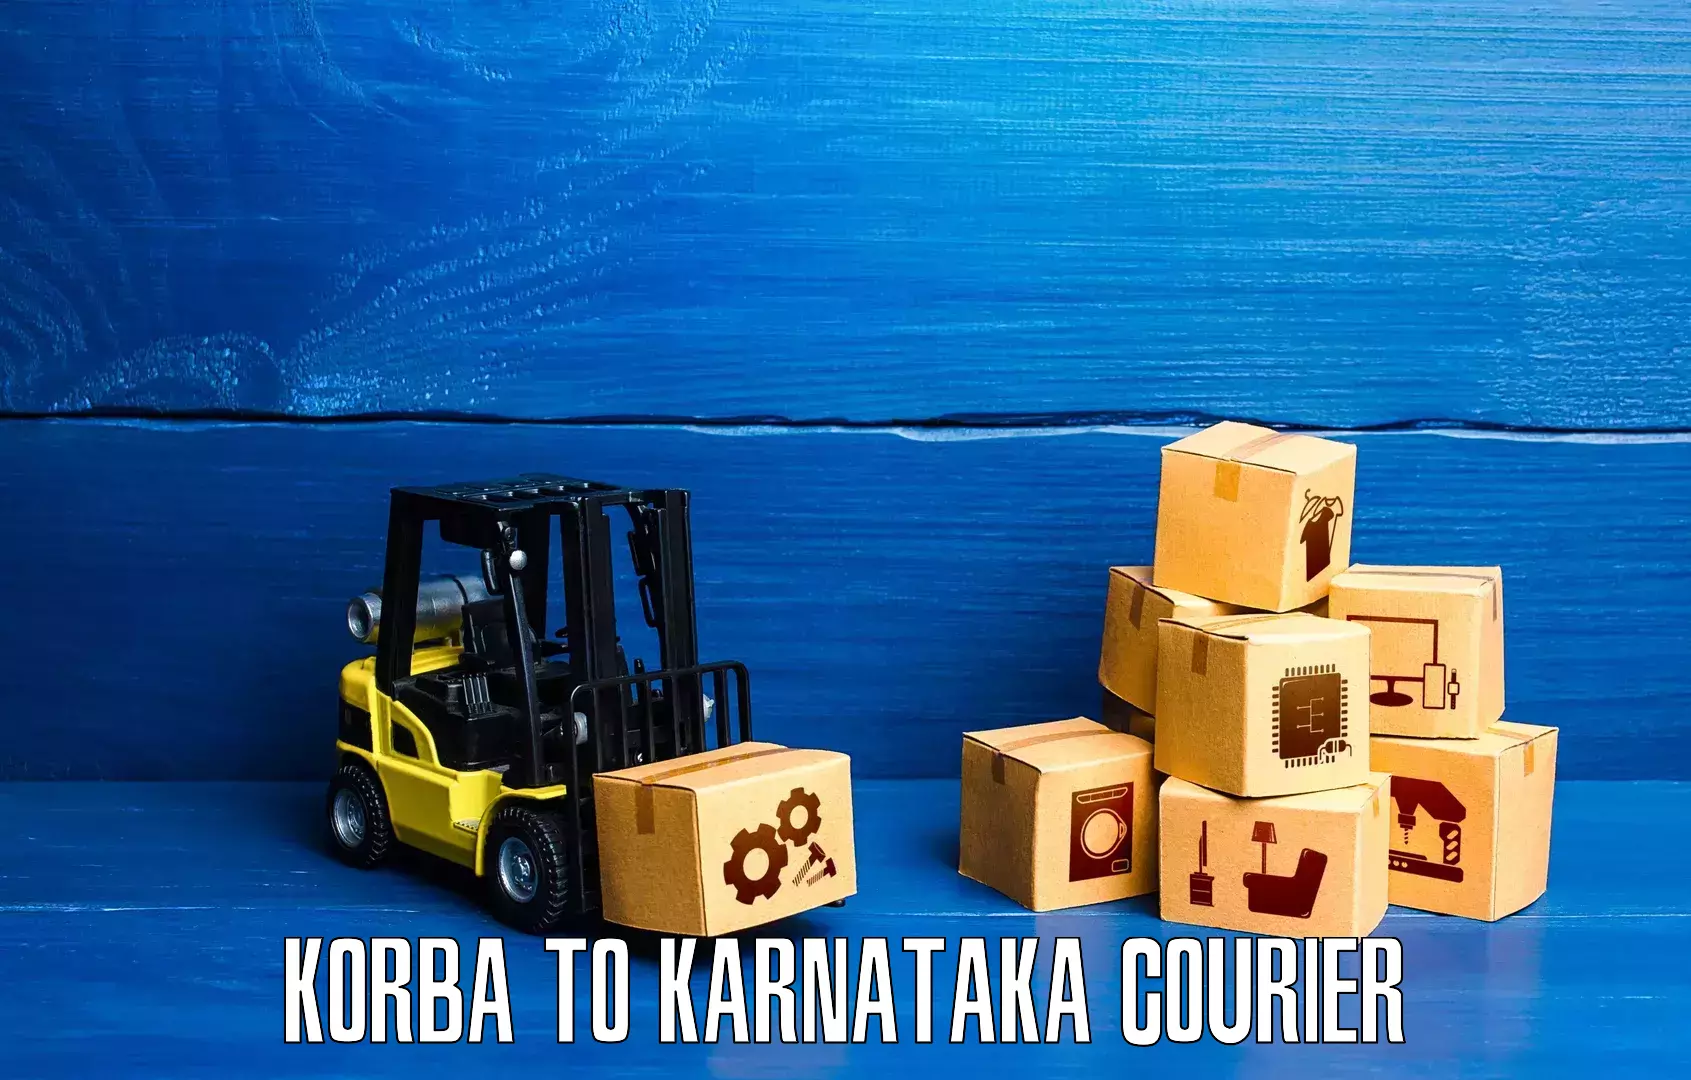 High-speed parcel service Korba to Hosanagar